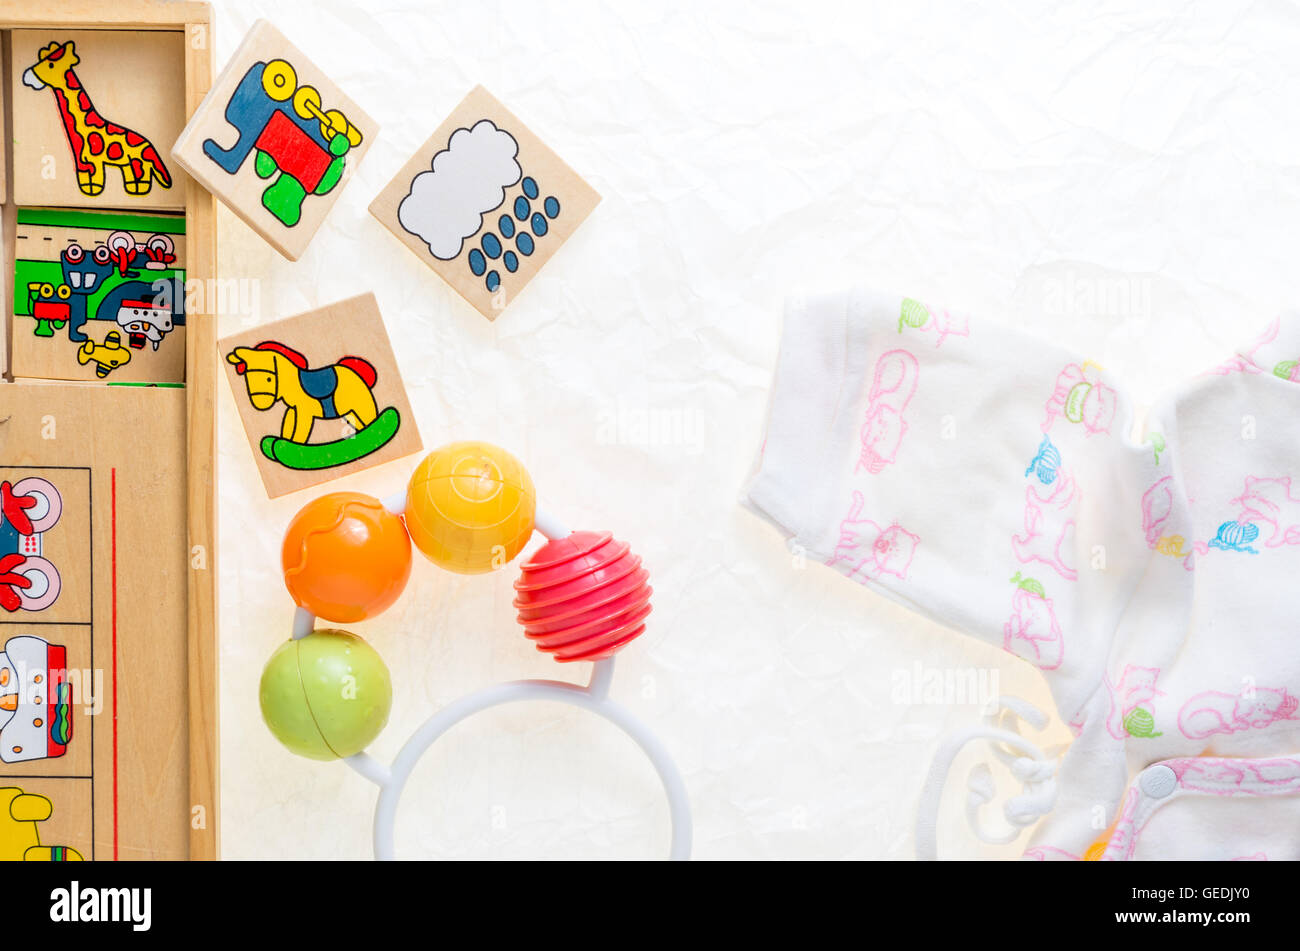 Juguetes de madera genérico sin derechos de copia, que representan objetos y animales decoraciones, adecuado para bebés para jugar Foto de stock